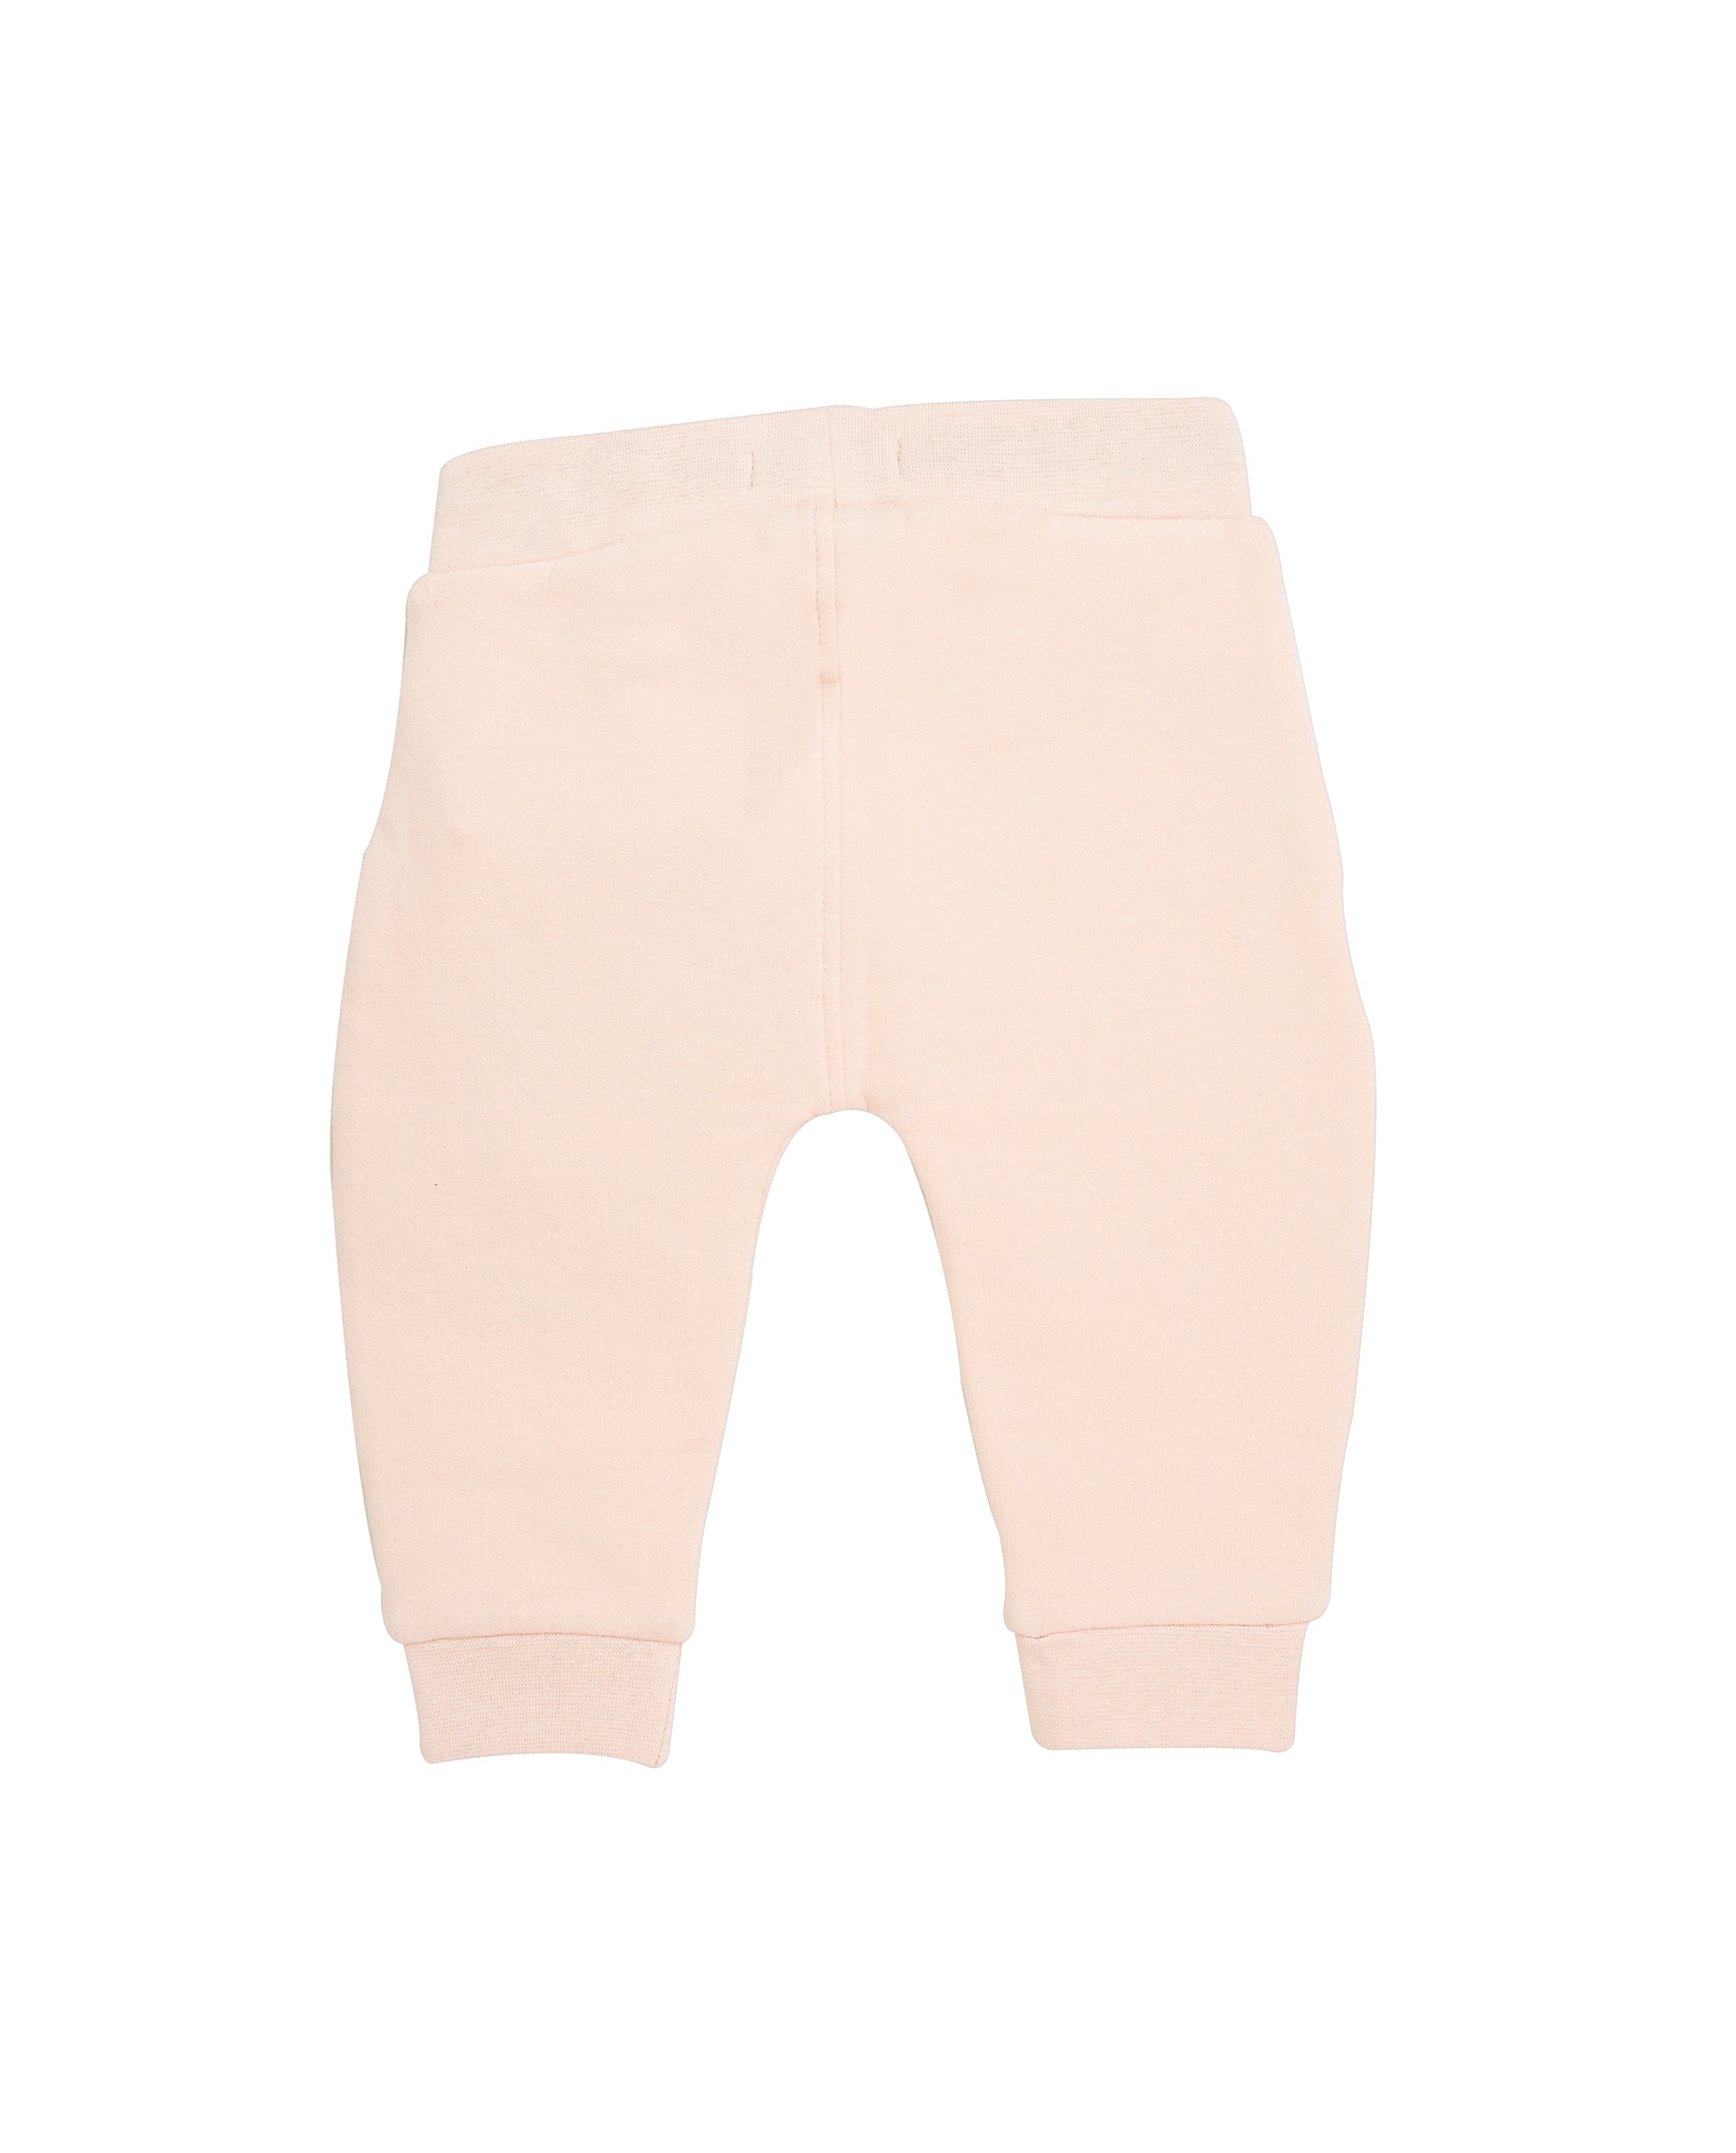 Pantalons - Pantalon molletonné rose